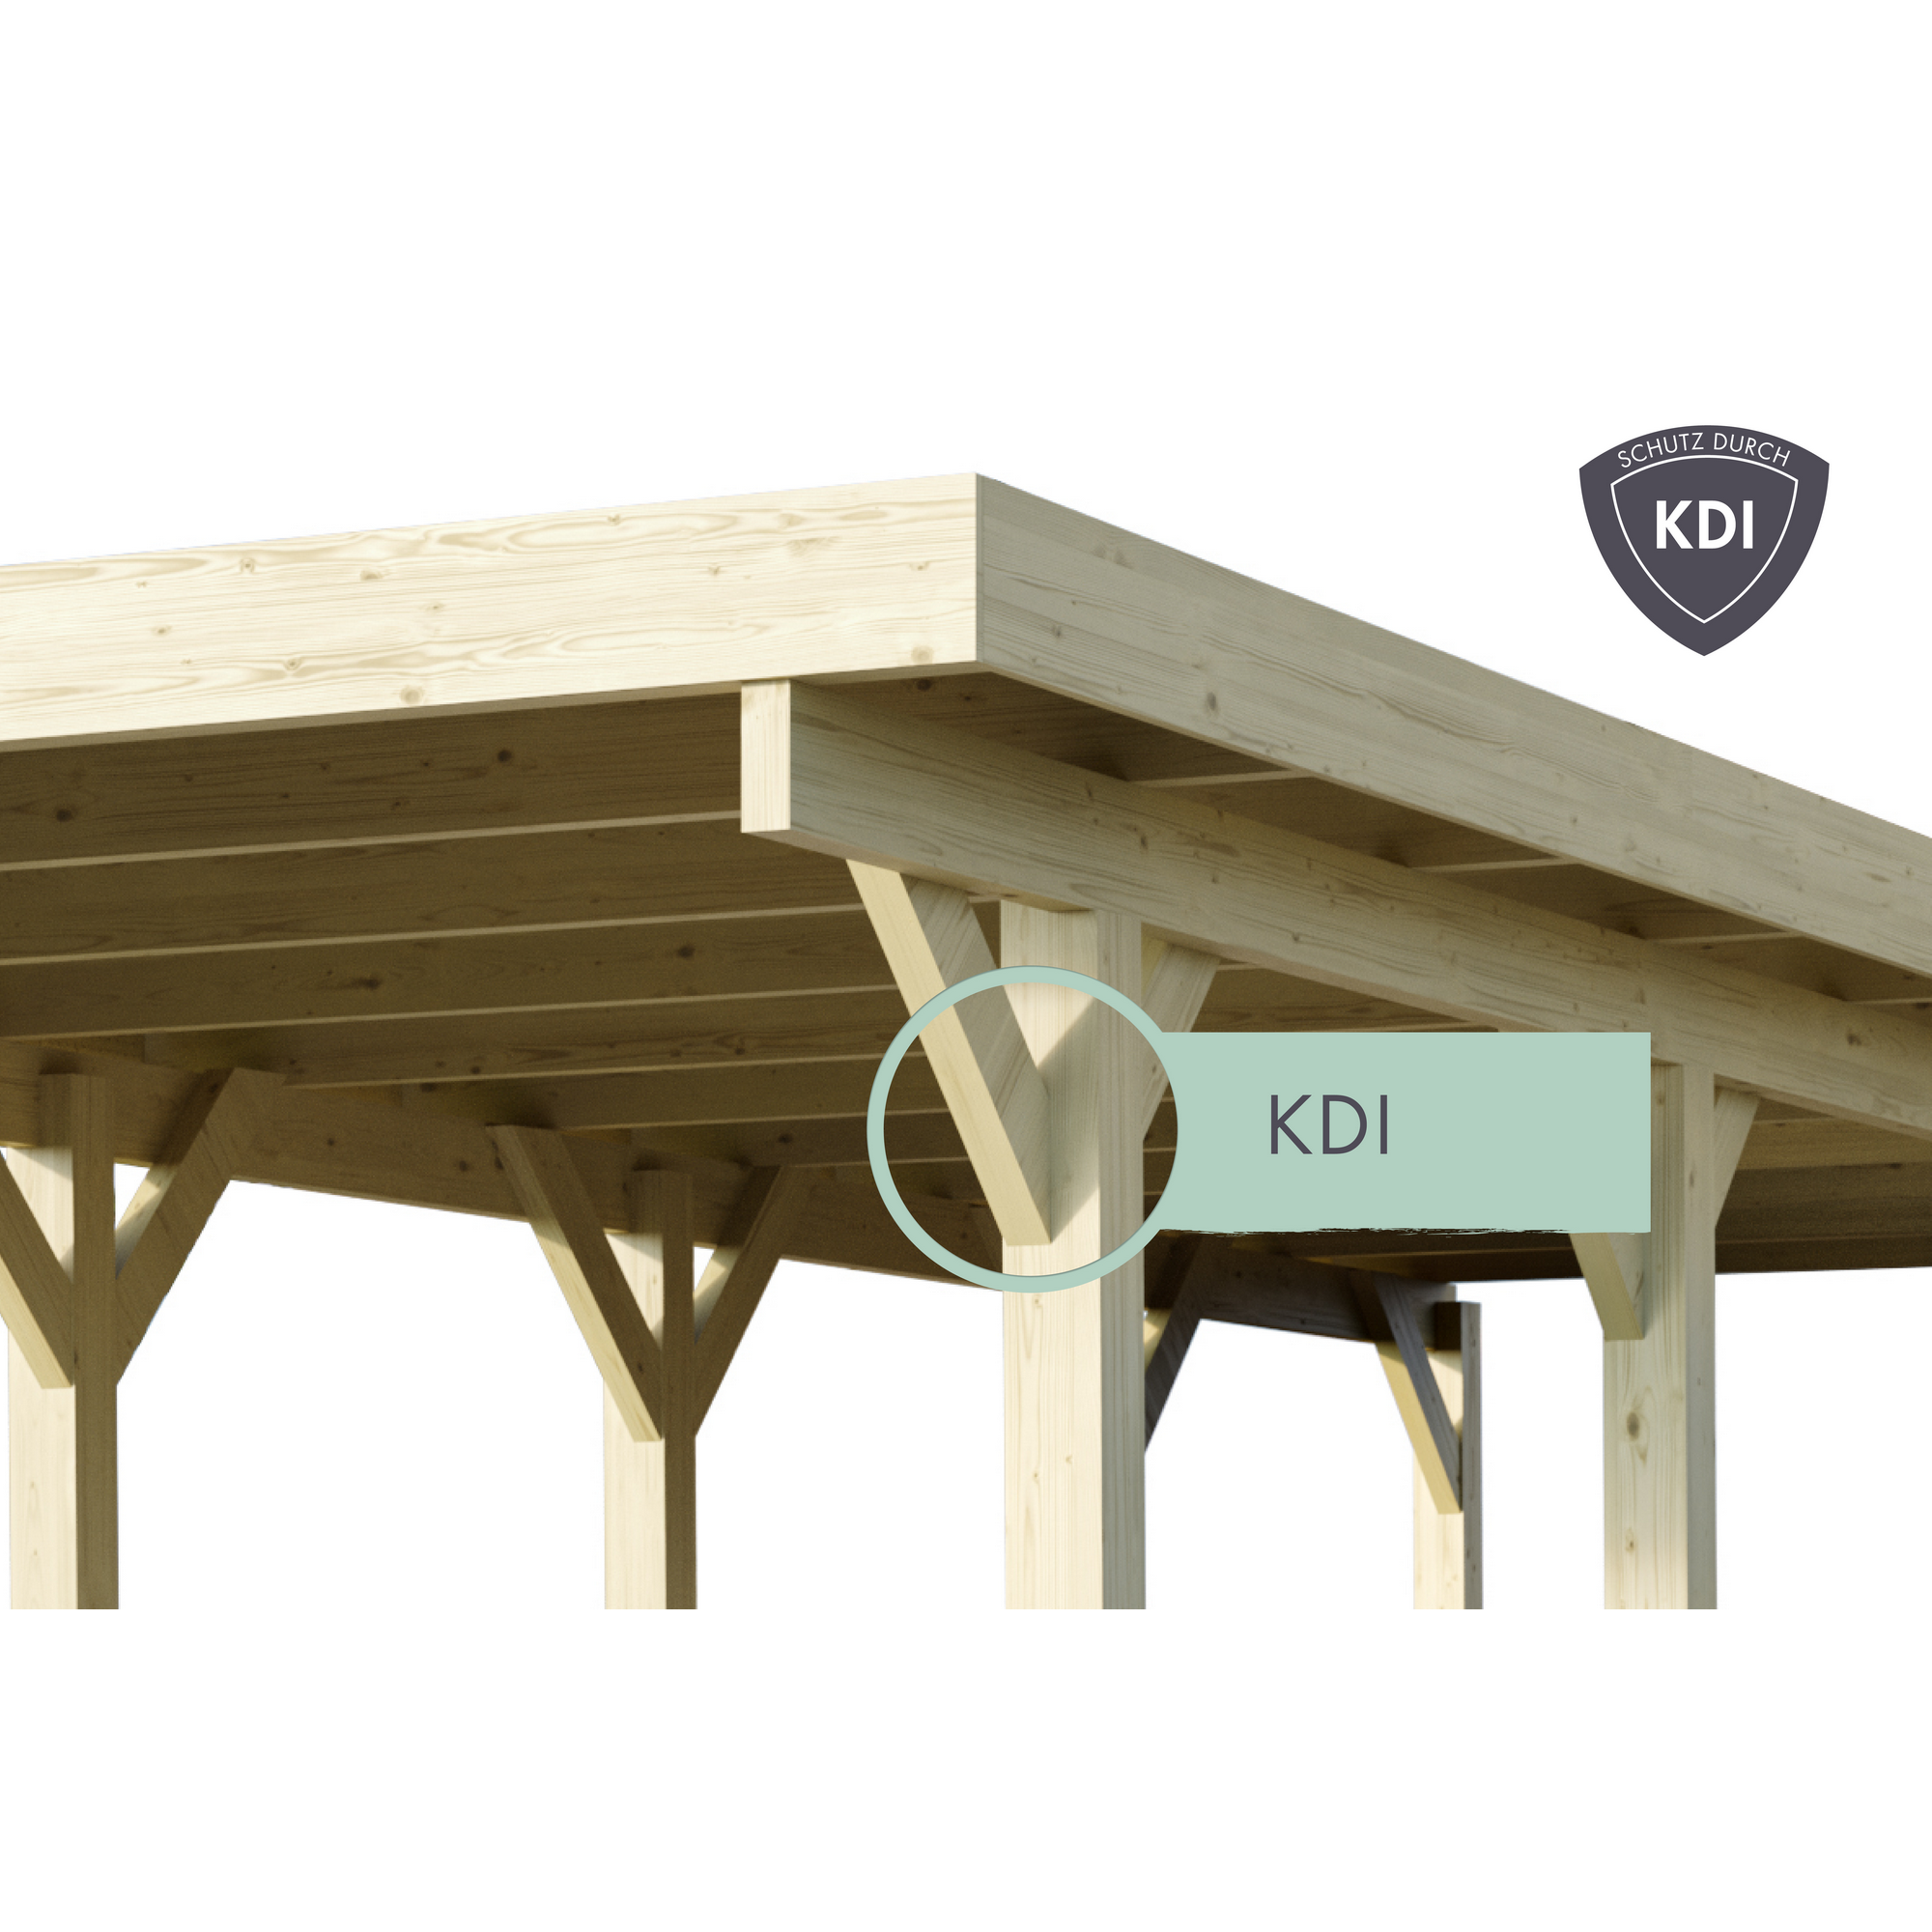 Doppelcarport 'Carlos 2' Kiefer PVC-Dach 670 x 598 x 237 cm + product picture